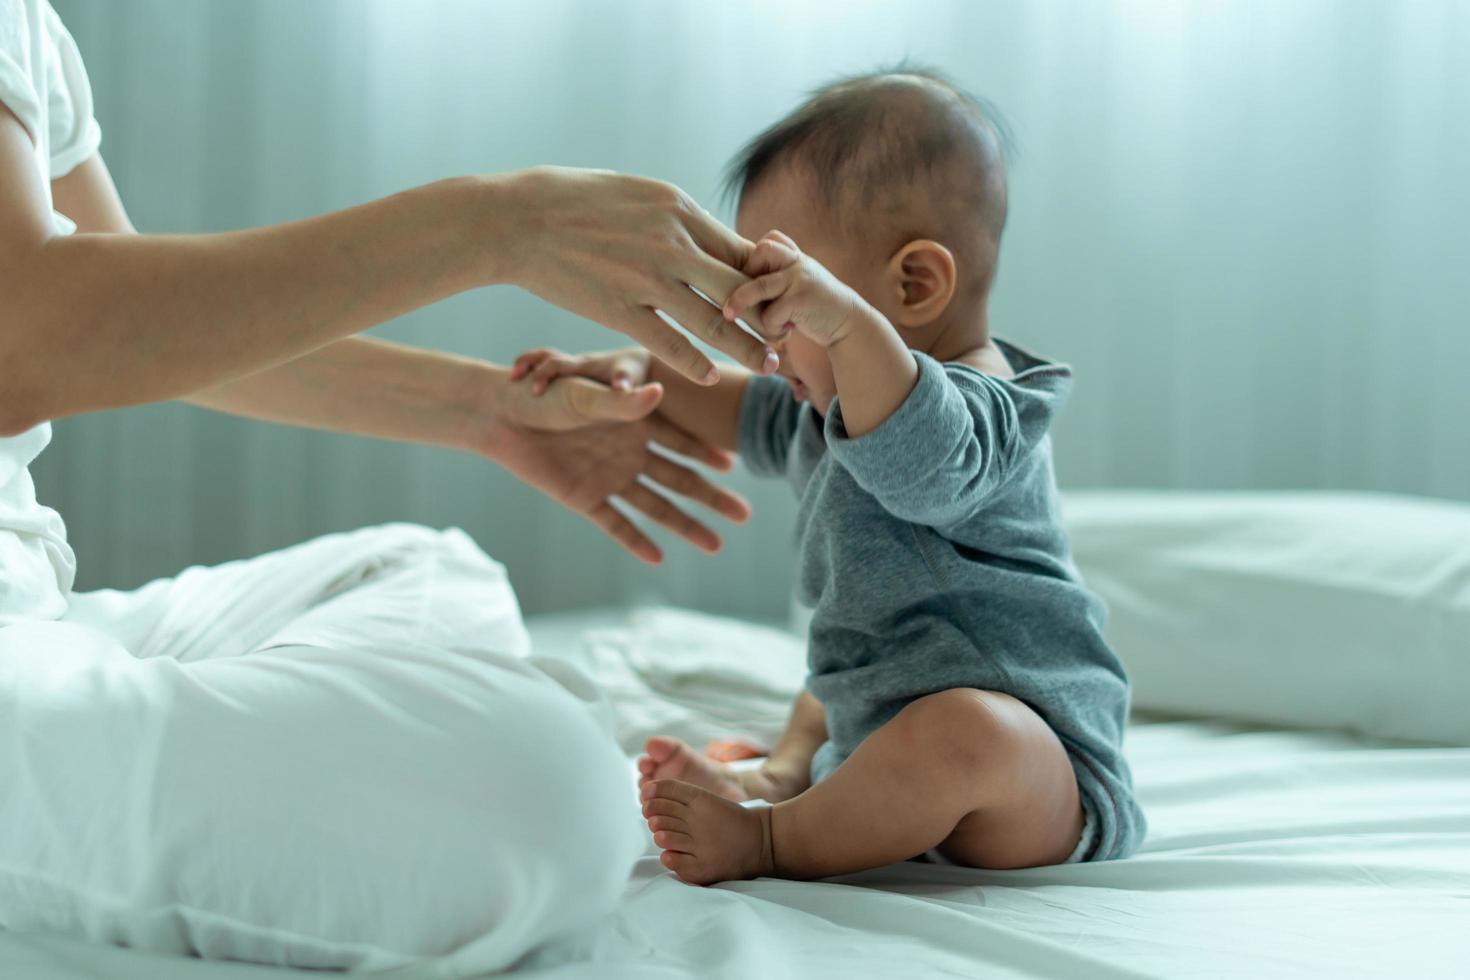 bébé asiatique. un bébé asiatique fait confiance à la main de son père pour se lever. père et fils passent du temps ensemble photo